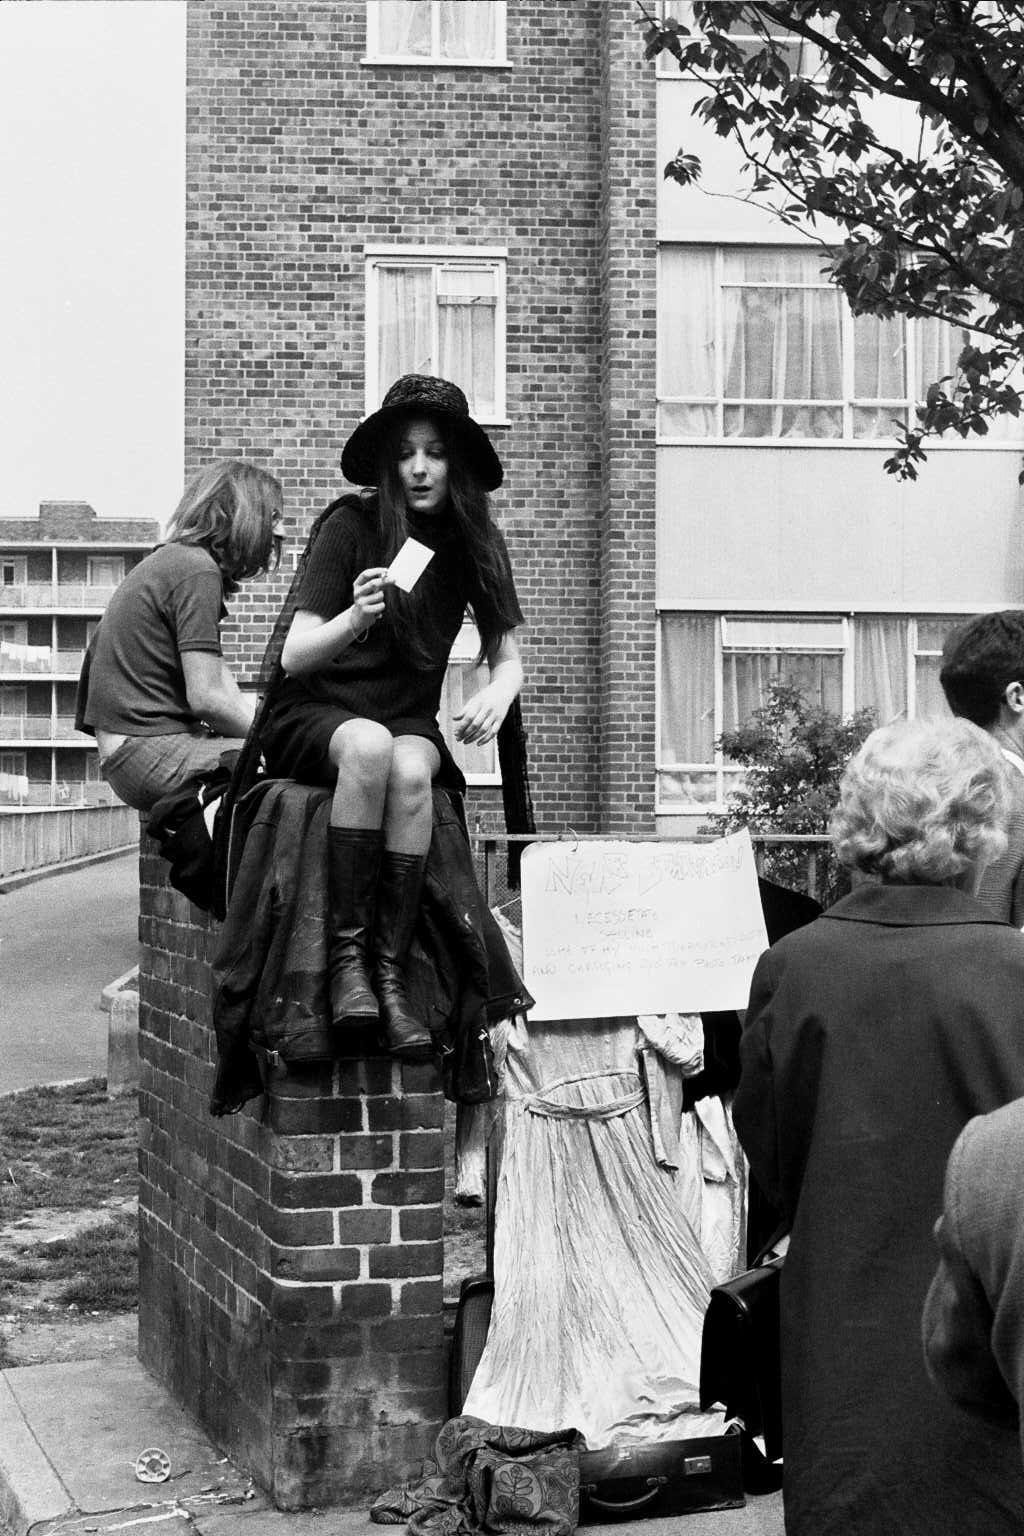 Portobello Road London 1968